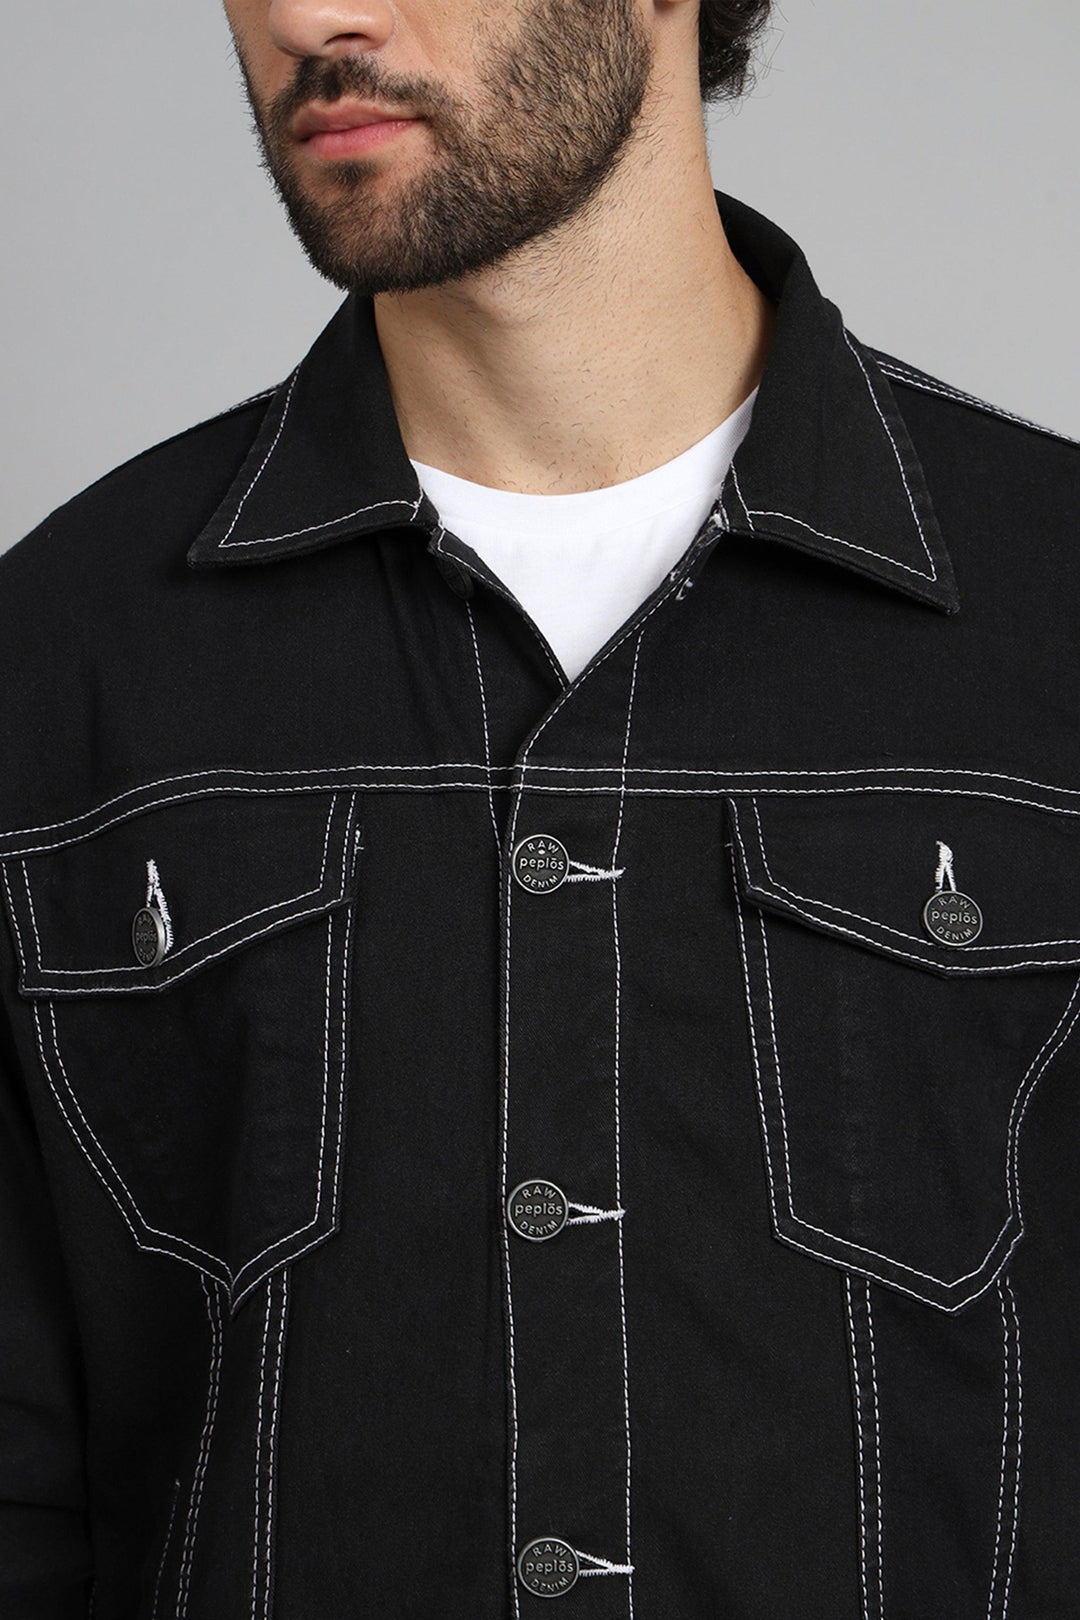 Regular Fit Black Color Denim Jacket for Men - Peplos Jeans 